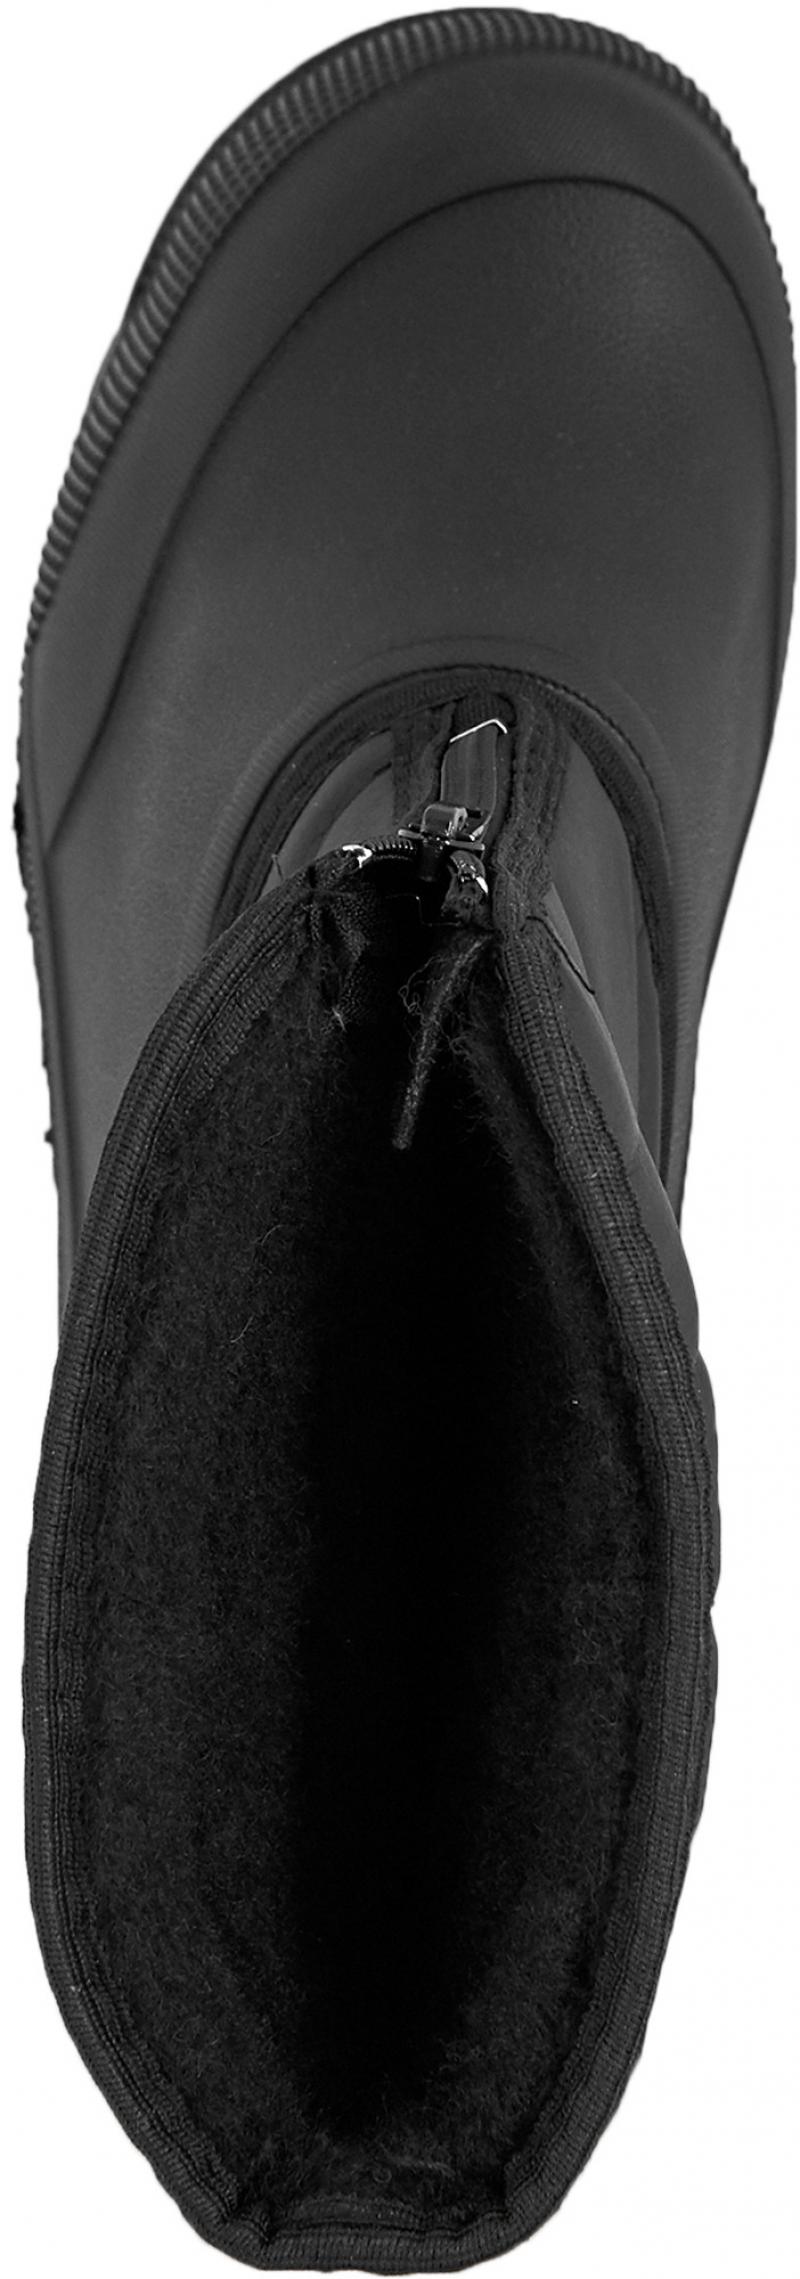 Сапоги мужские М-018 размер 43 цвет чёрный